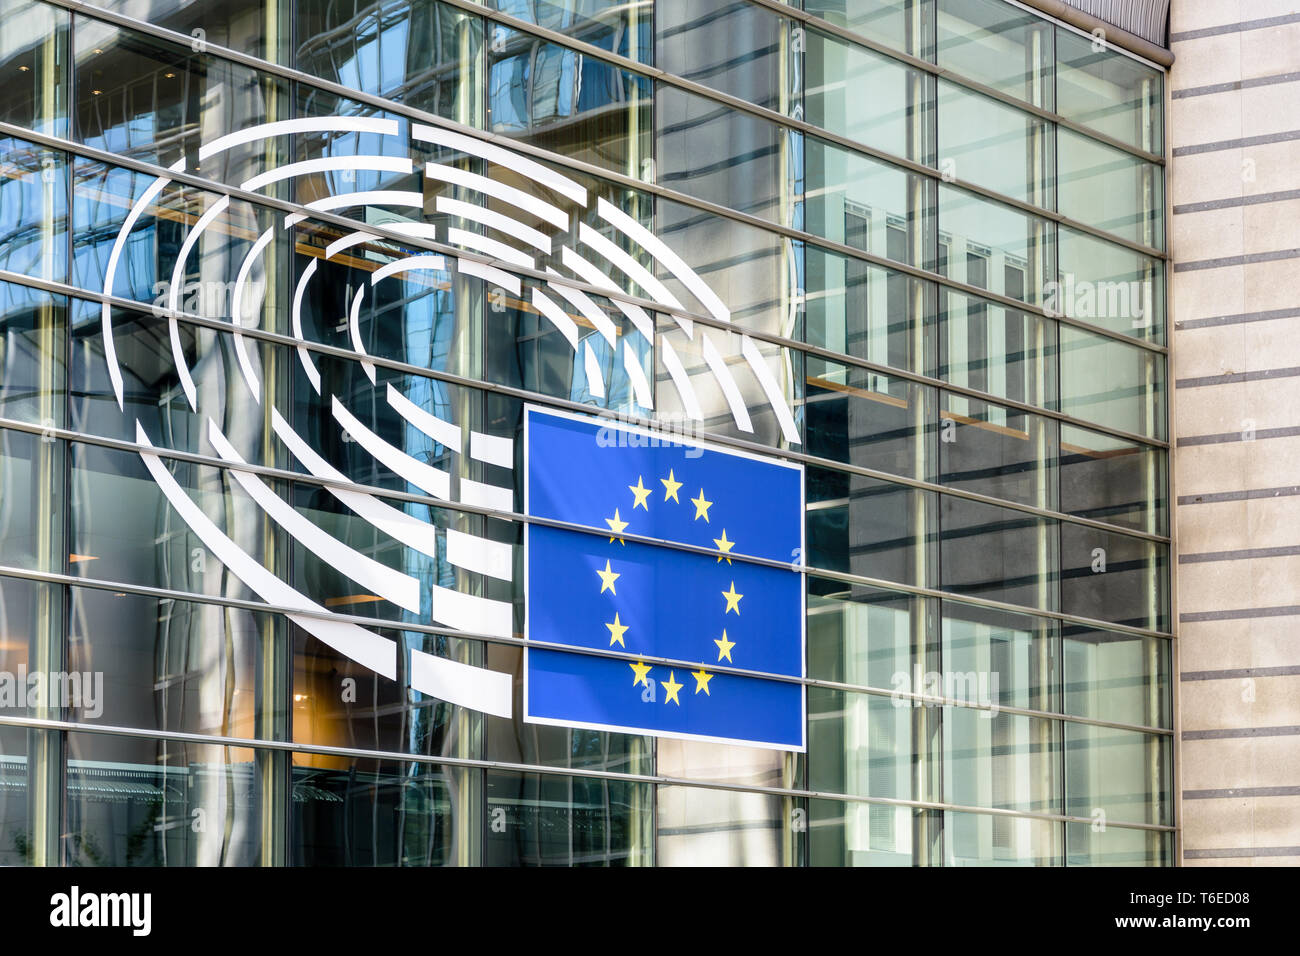 Close-up du gros logo du Parlement européen sur le côté de la Konstantinos Karamanlis bridge à l'Espace Léopold à Bruxelles, Belgique. Banque D'Images